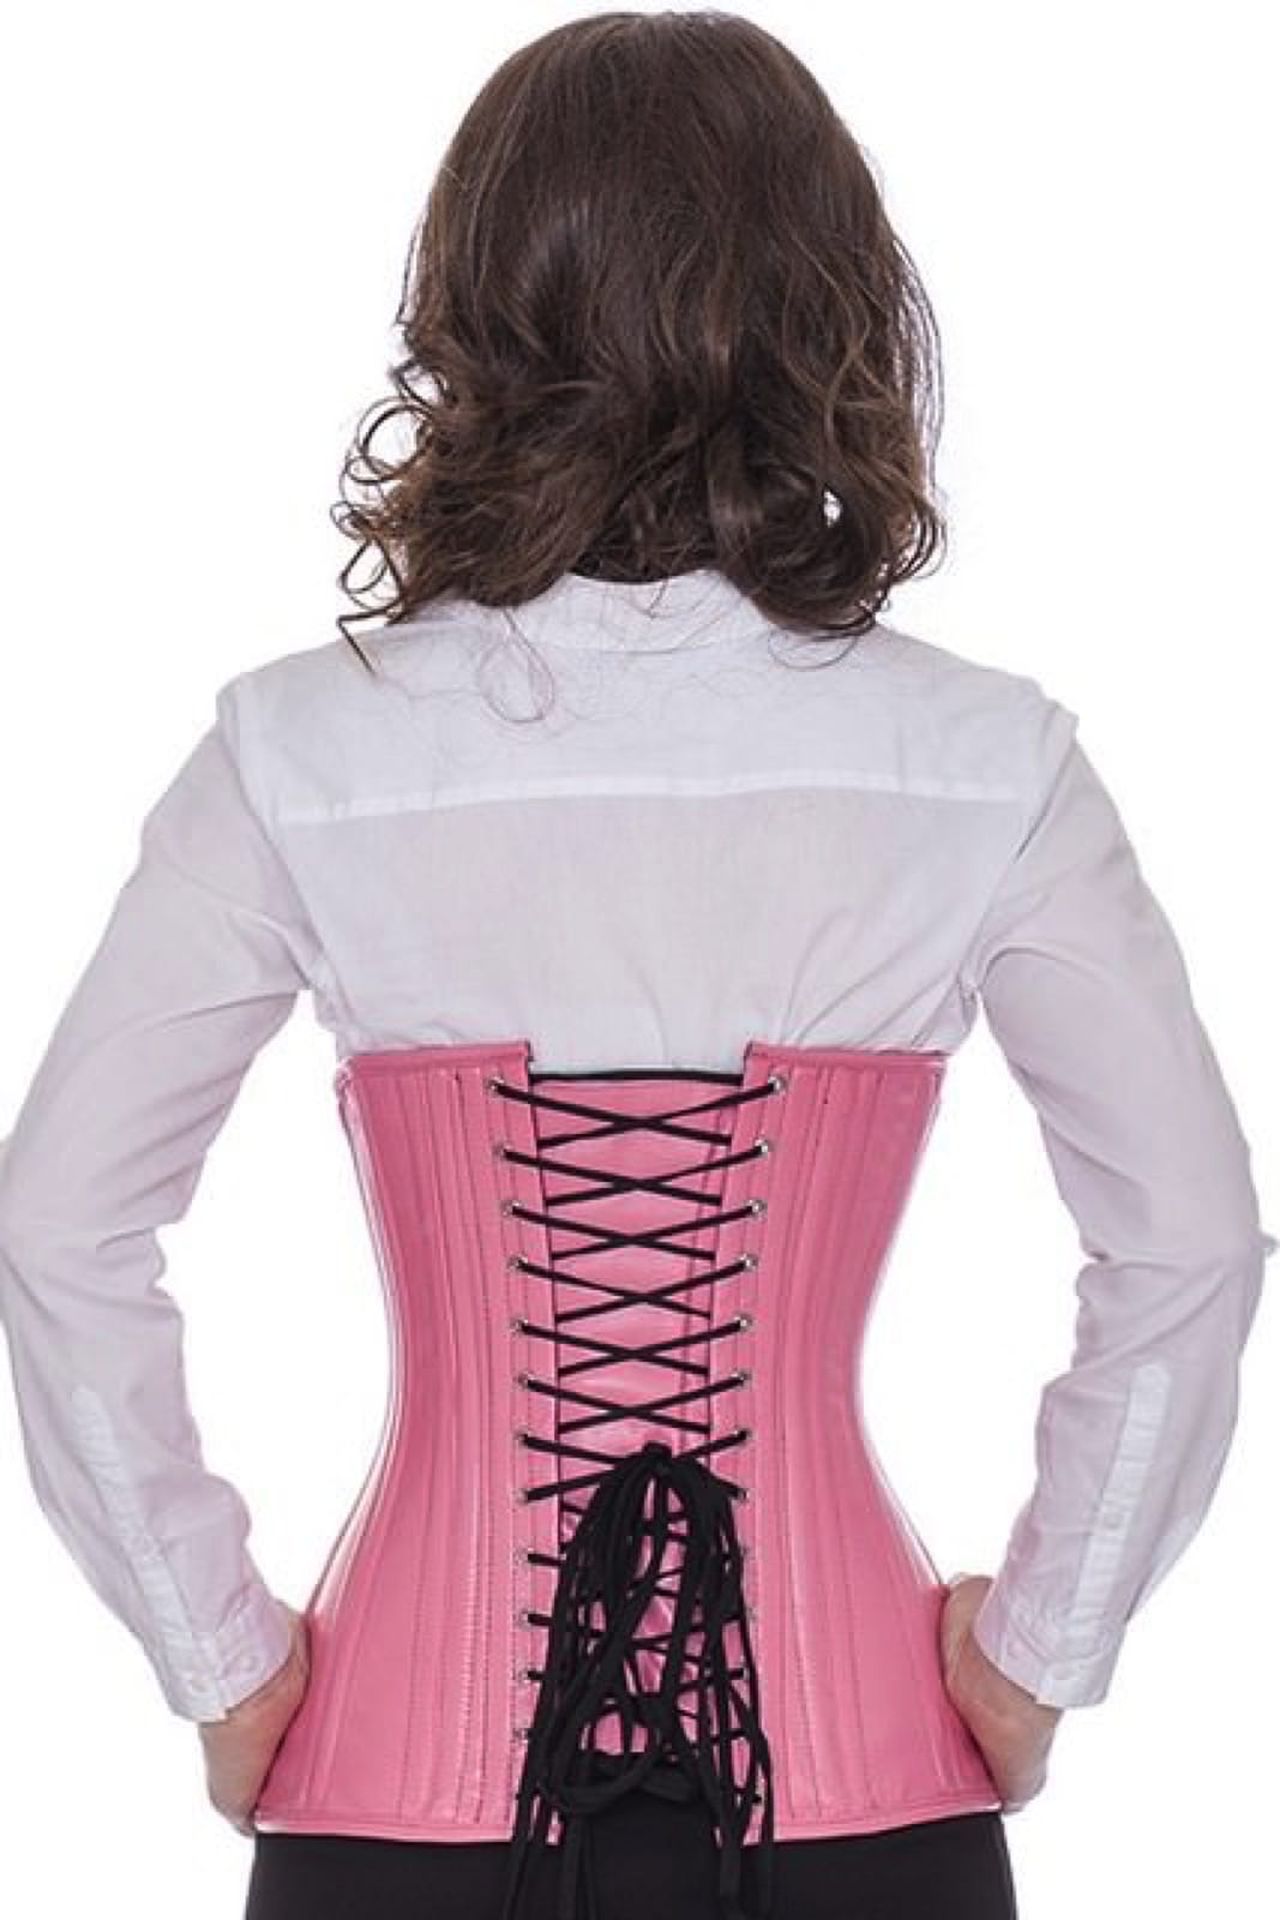 Leren corset pink onderborst rond gevormd Korset ln22